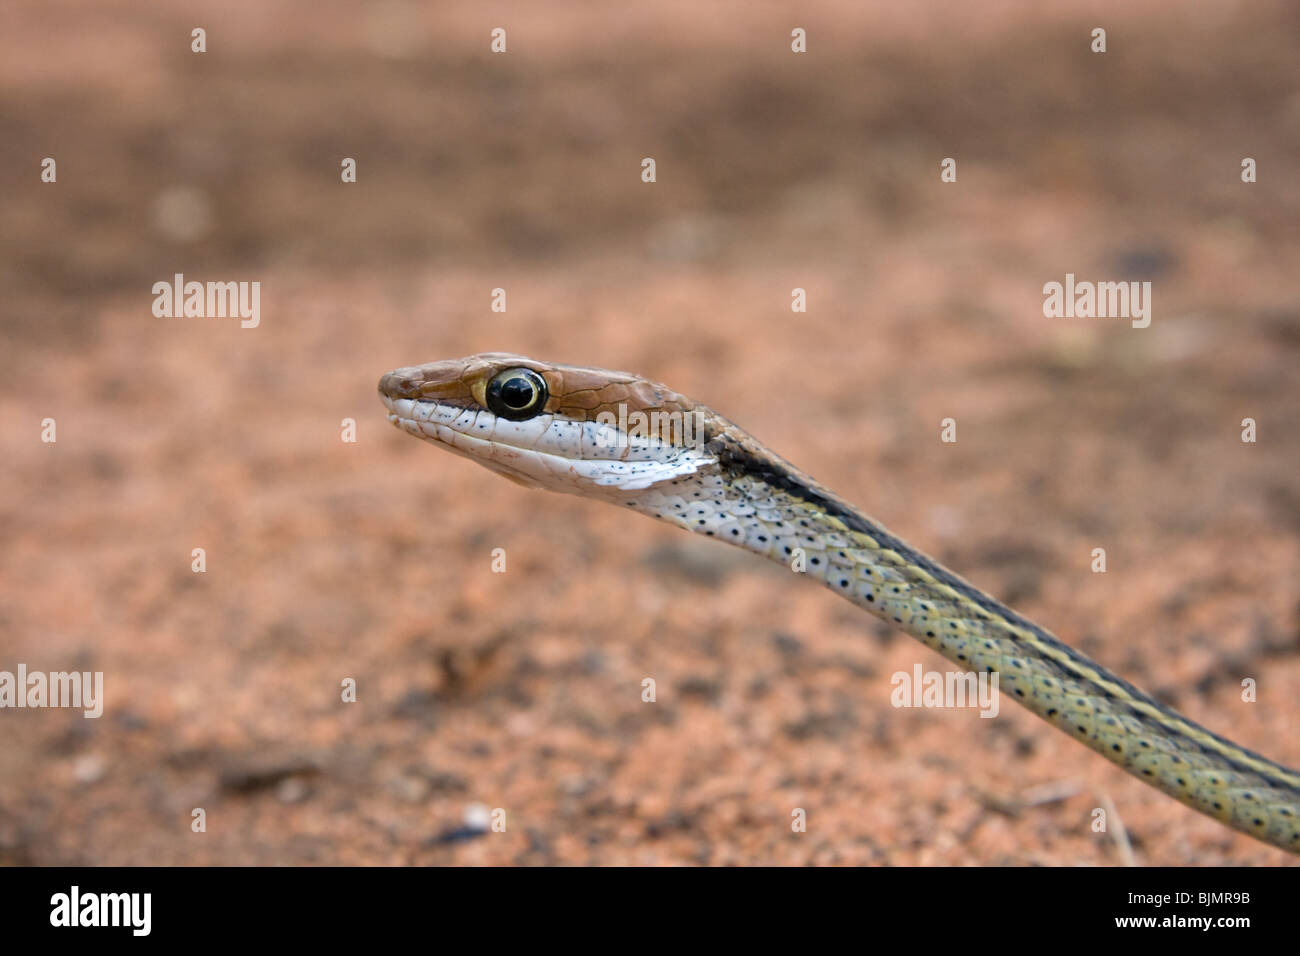 Una vid serpiente Thelotornis (sp), retrato. Foto de stock